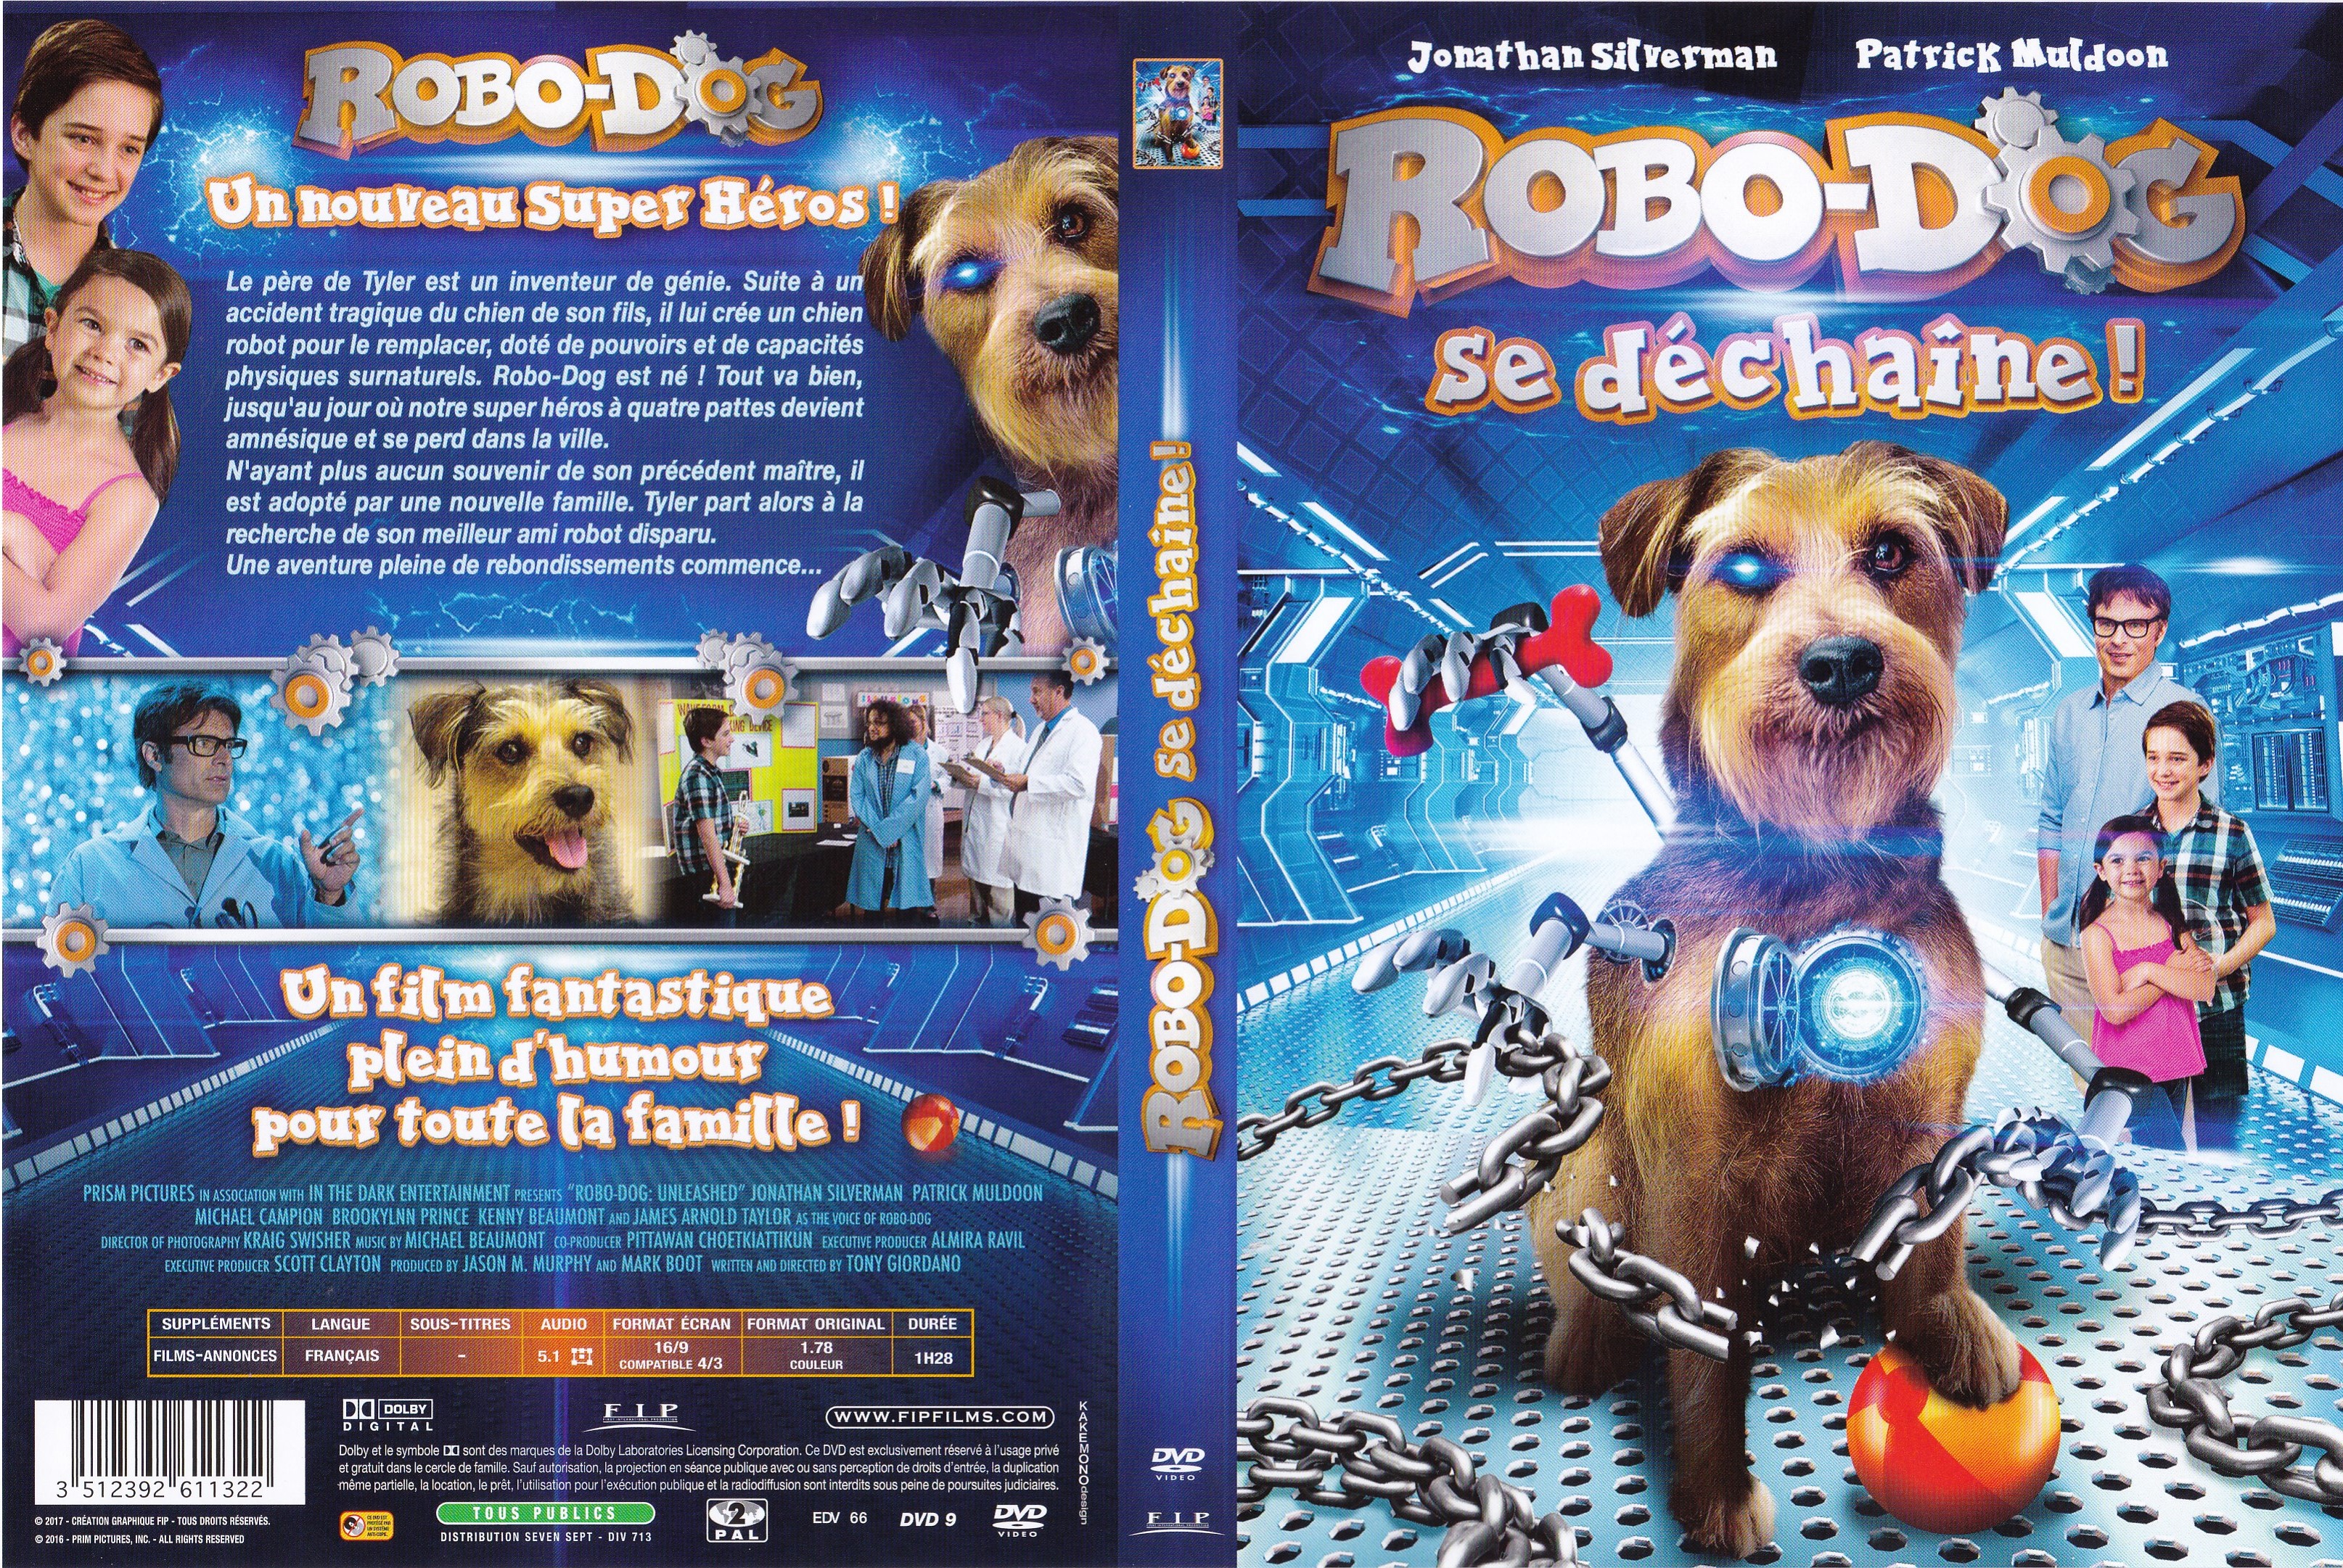 Jaquette DVD Robo-Dog se dchaine